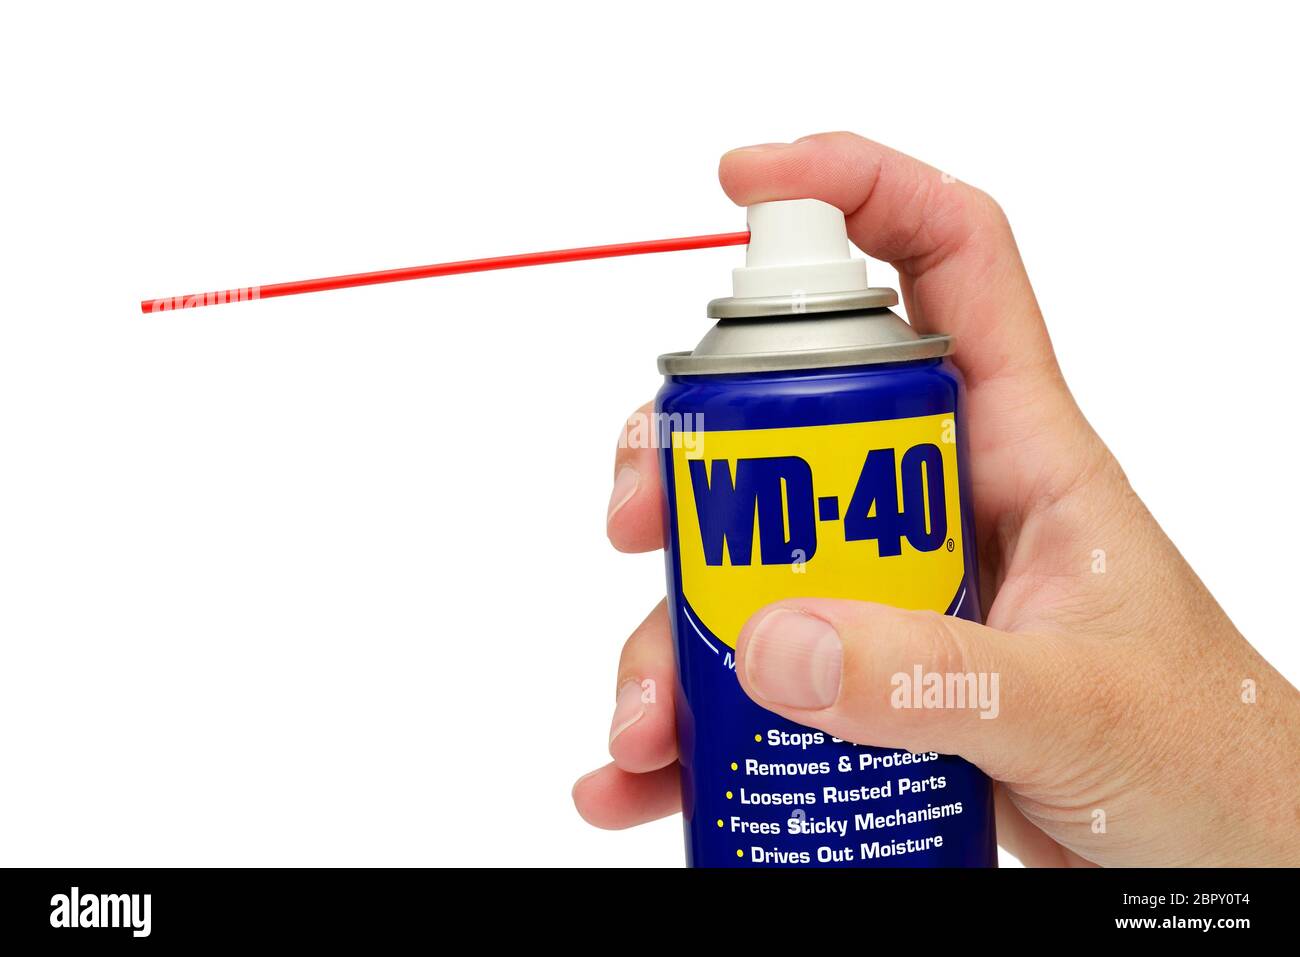 Le lubrifiant WD 40 dans un pulvérisateur peut être maintenu contre un fond blanc Banque D'Images